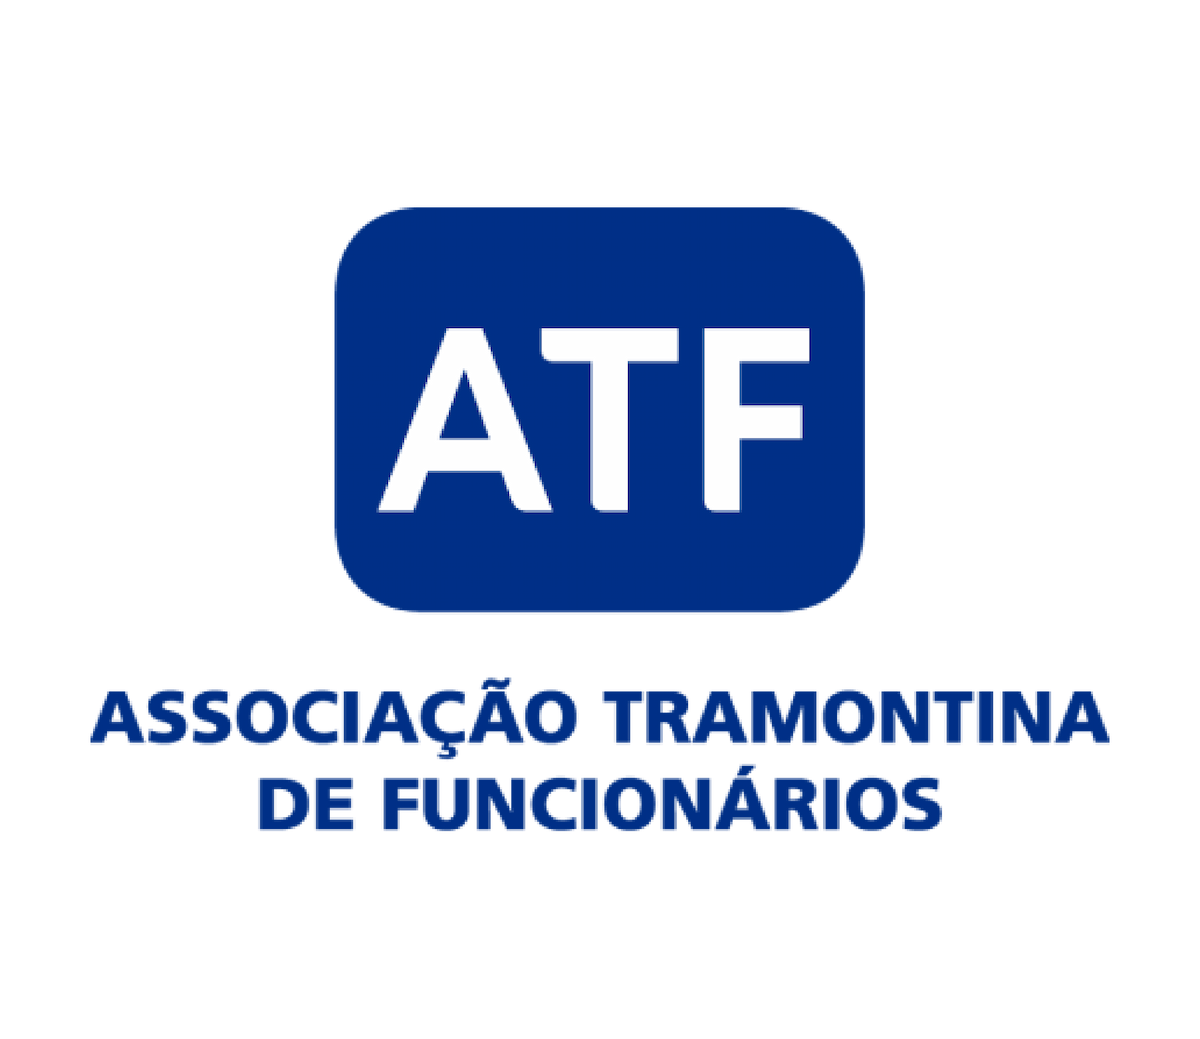 Logotipo ATF: Associação Tramontina de Funcionários.